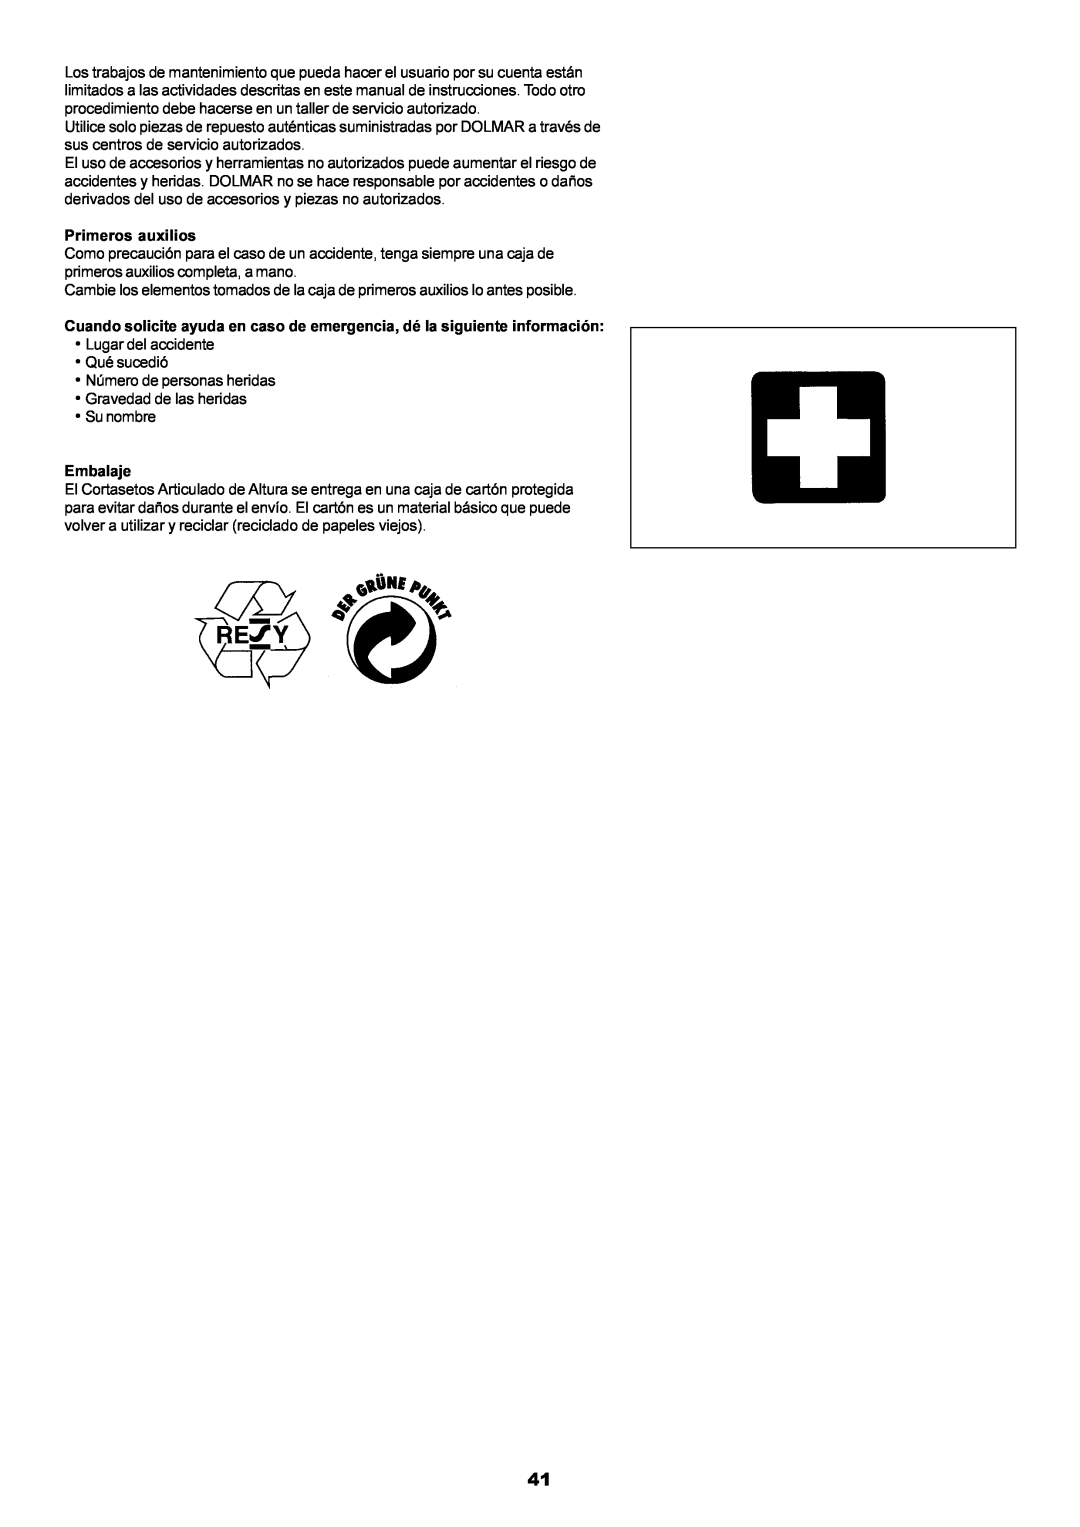 Dolmar MH-2556 instruction manual Primeros auxilios, Lugar del accidente Qué sucedió Número de personas heridas 